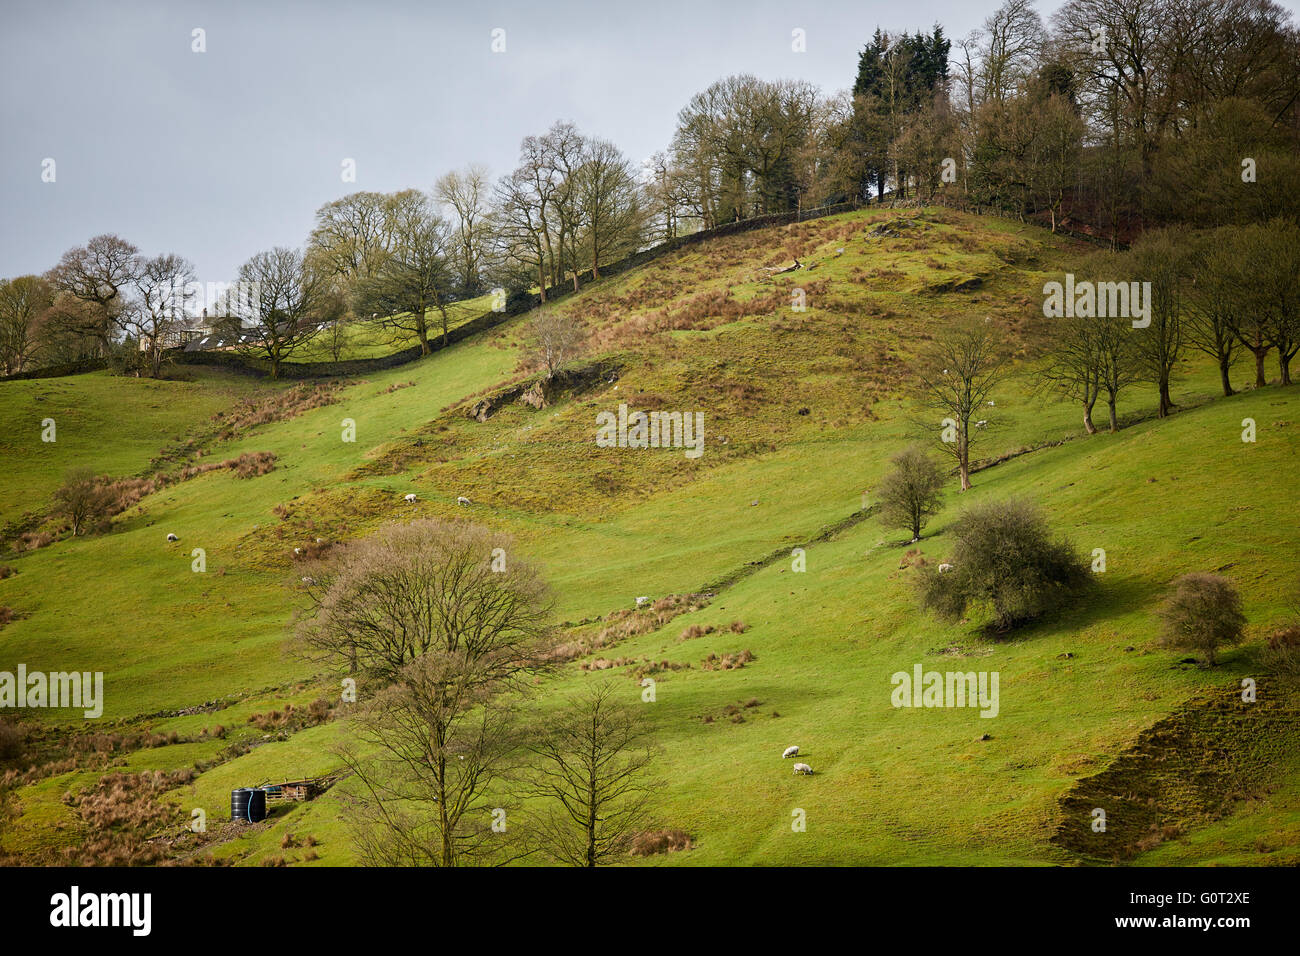 Whalley ein großes Dorf in Ribble Valley an den Ufern des Flusses Calder in Lancashire.  Bauernhof Weideland in der Calder Vally Stockfoto